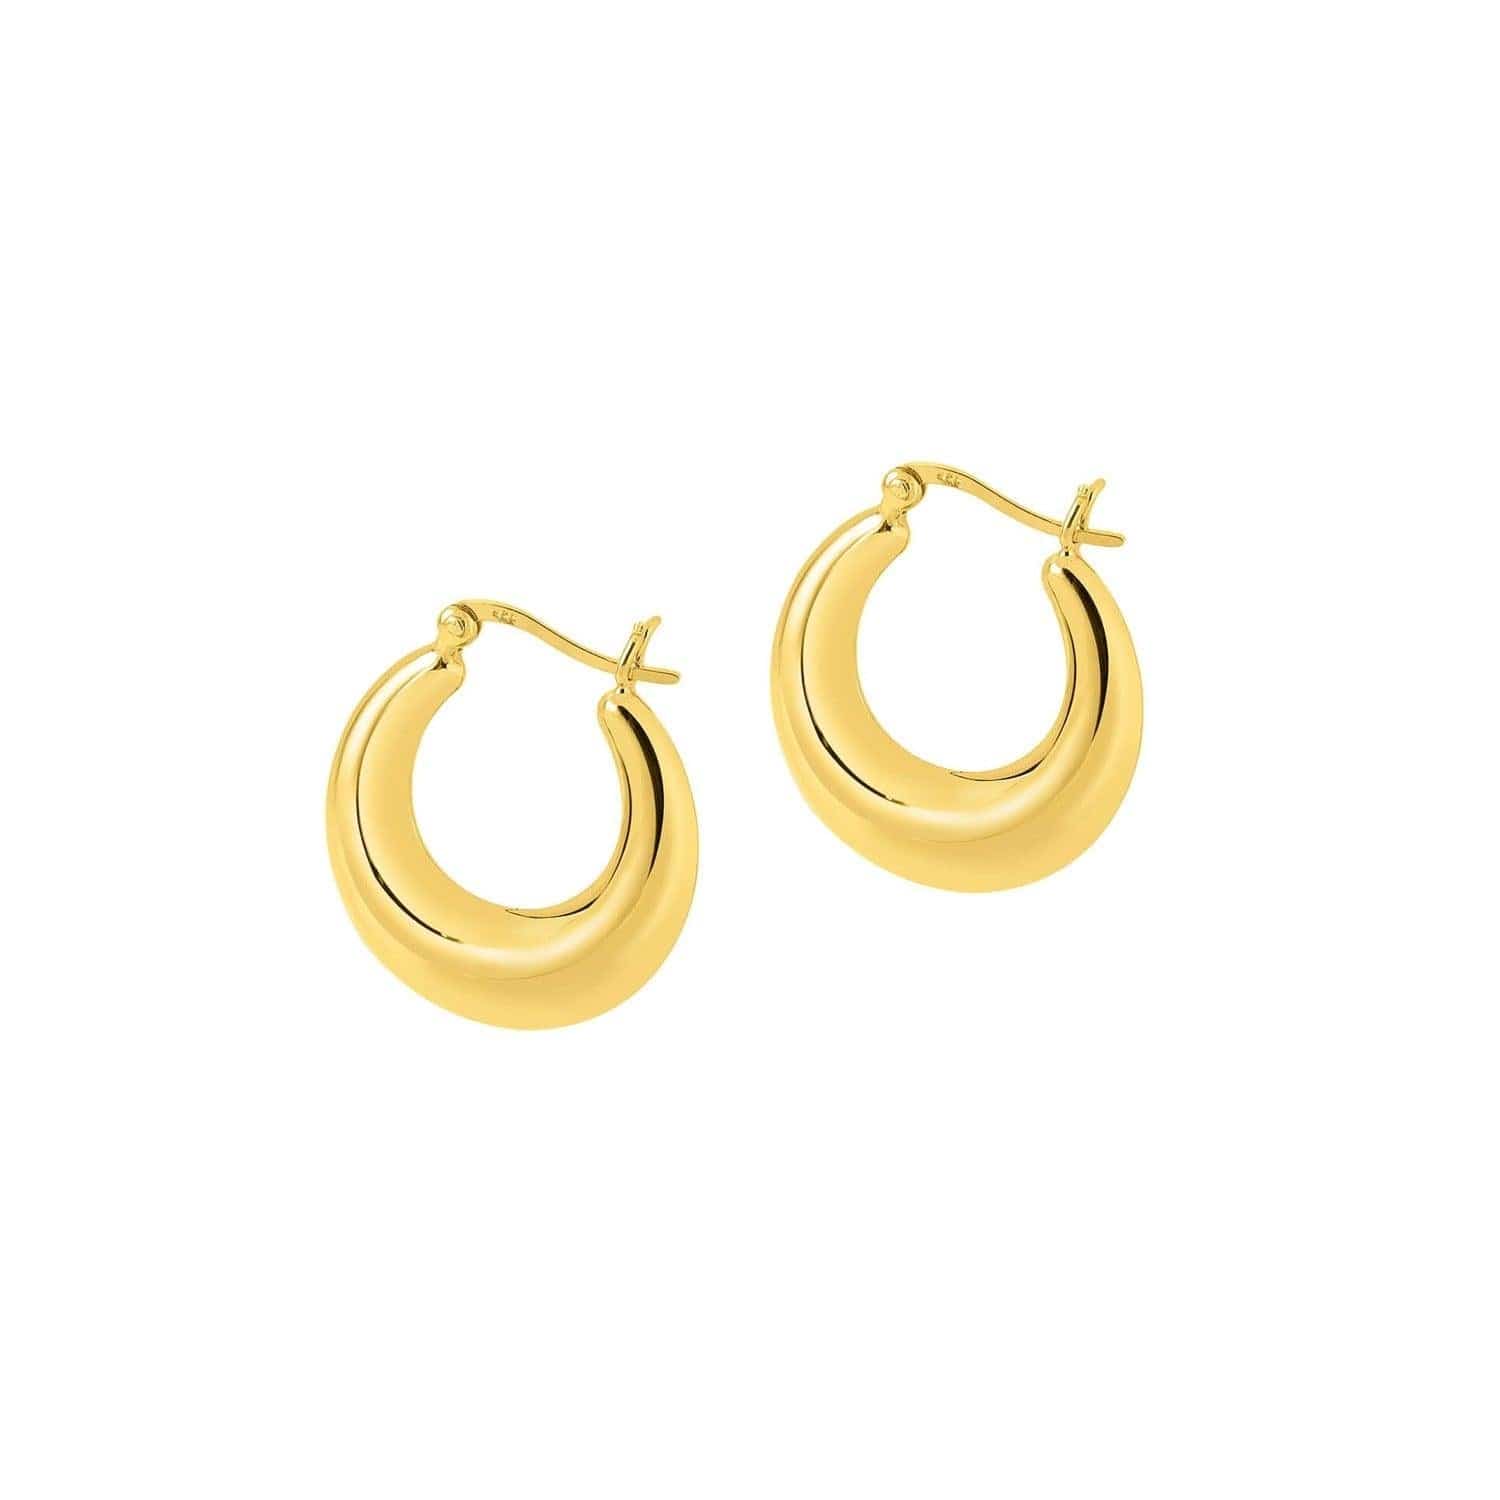 Big Gold Plated Indian Hoop earrings